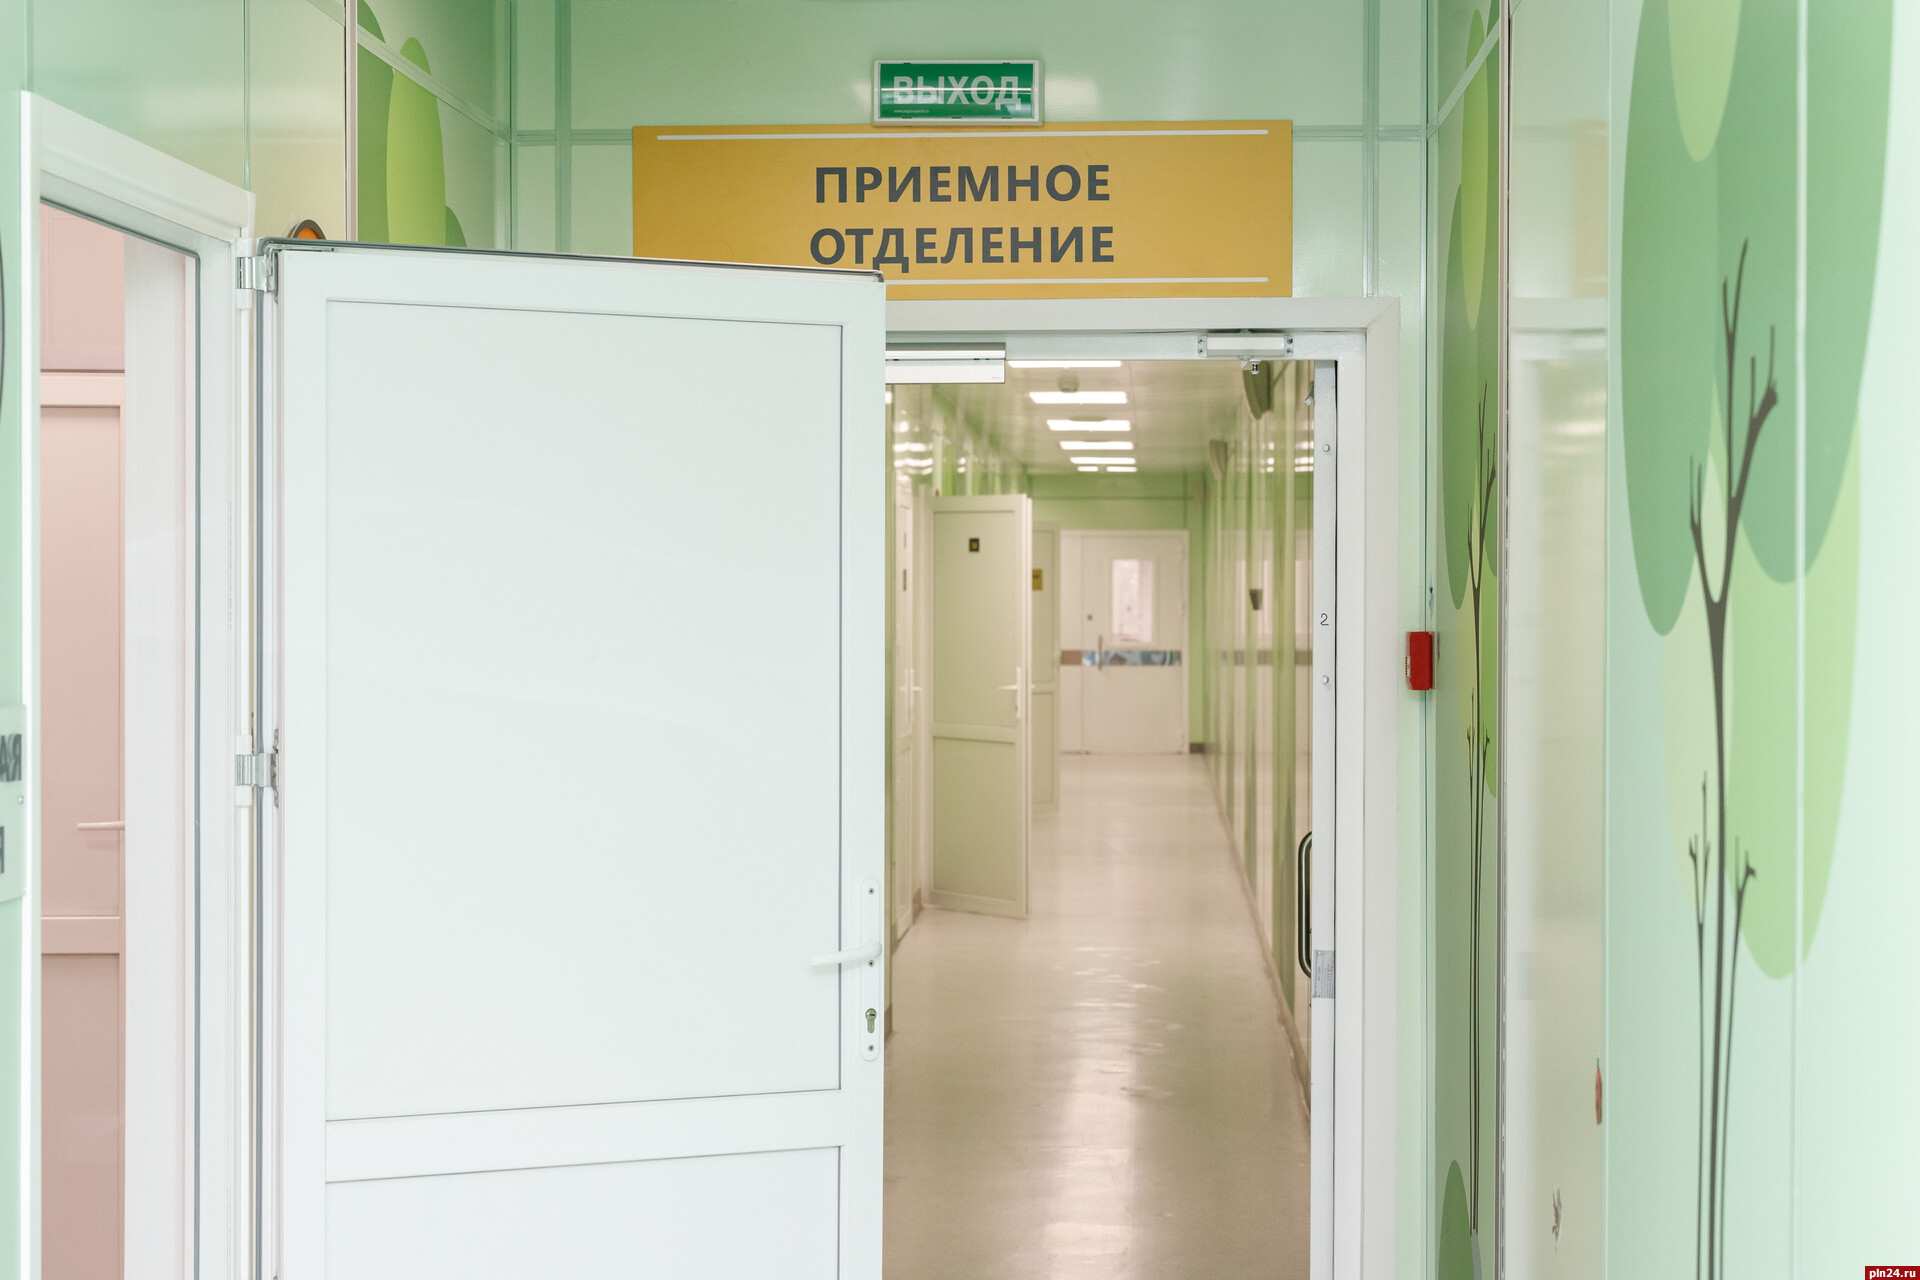 14 новых случаев заражения коронавирусом выявили в Псковской области